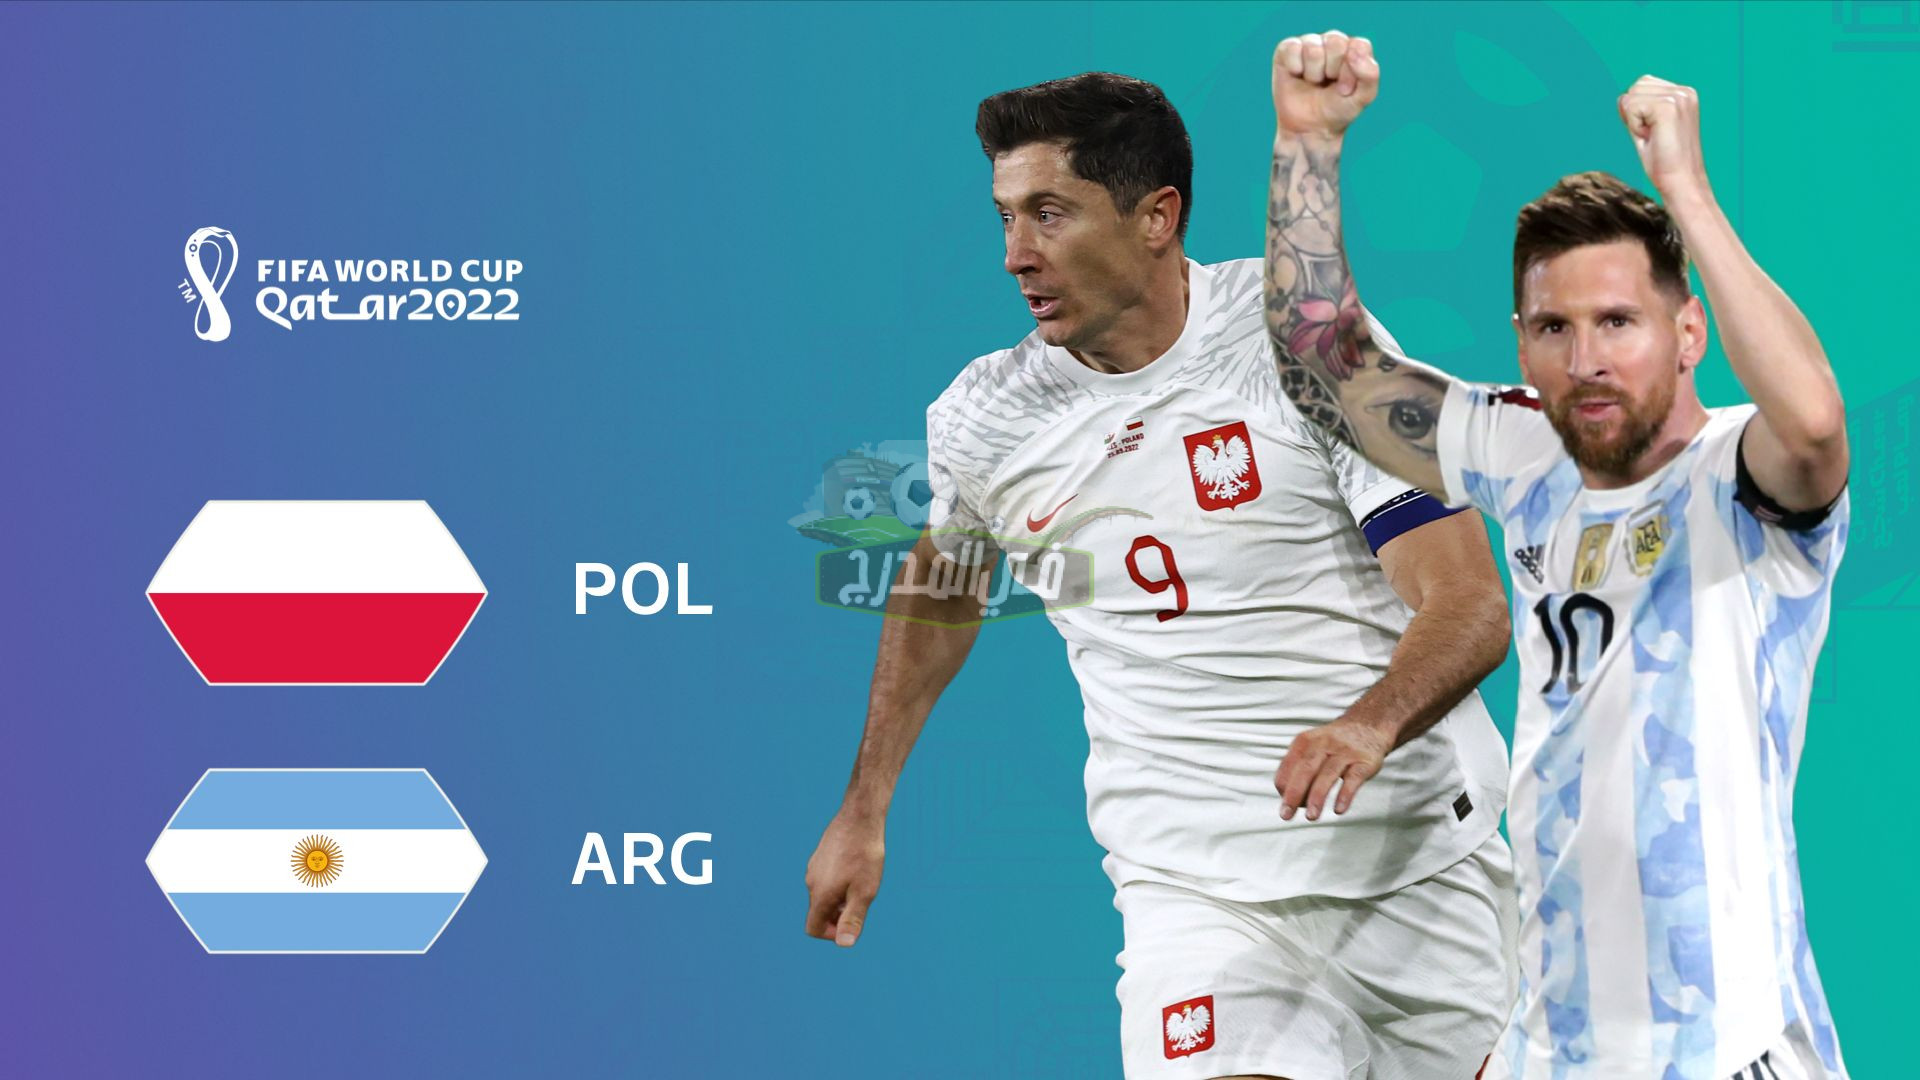 نزلها دلوقتي.. القنوات المفتوحة الناقلة لمباراة الأرجنتين وبولندا Argentina vs Poland في كأس العالم 2022